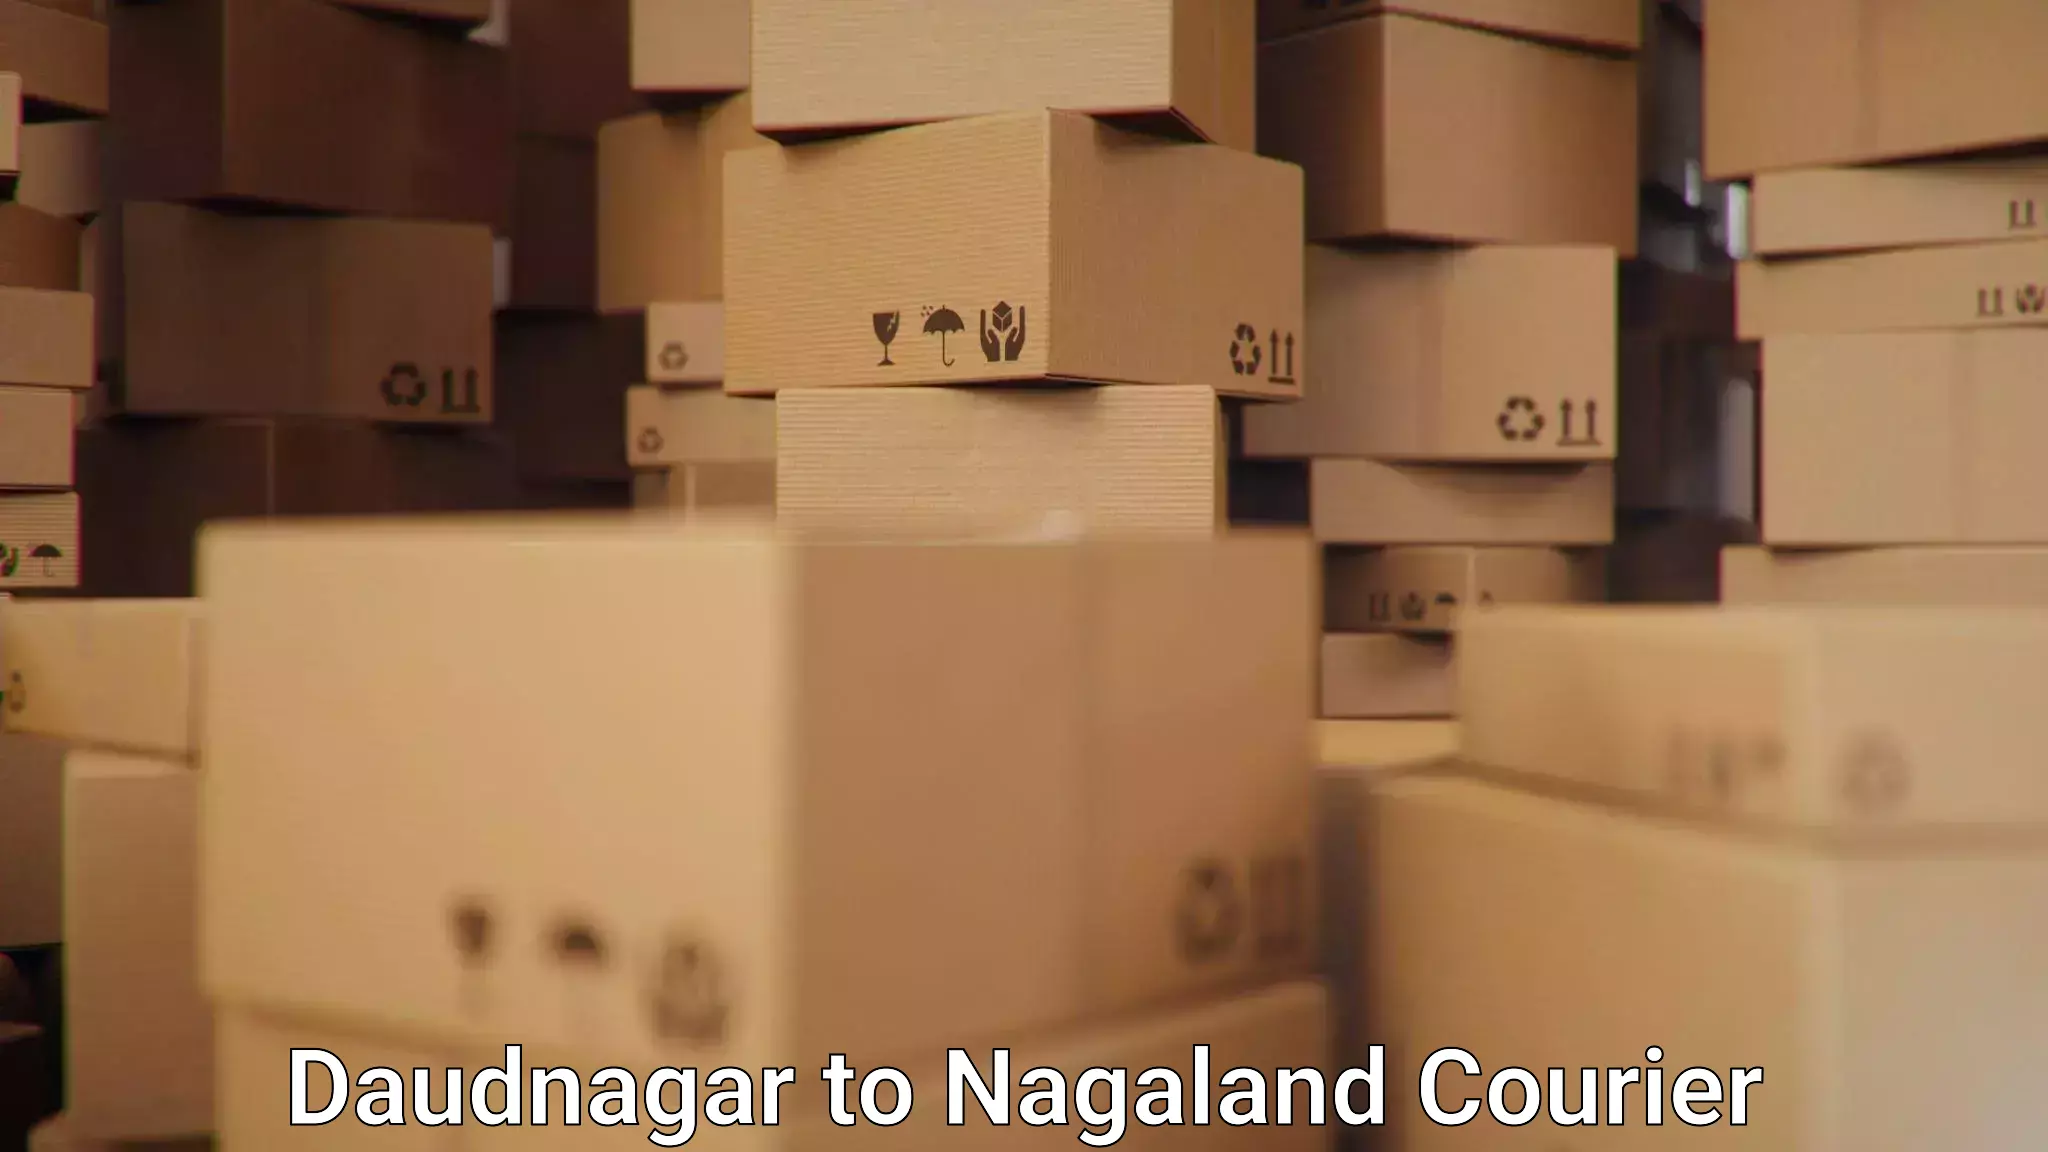 Global logistics network Daudnagar to Nagaland